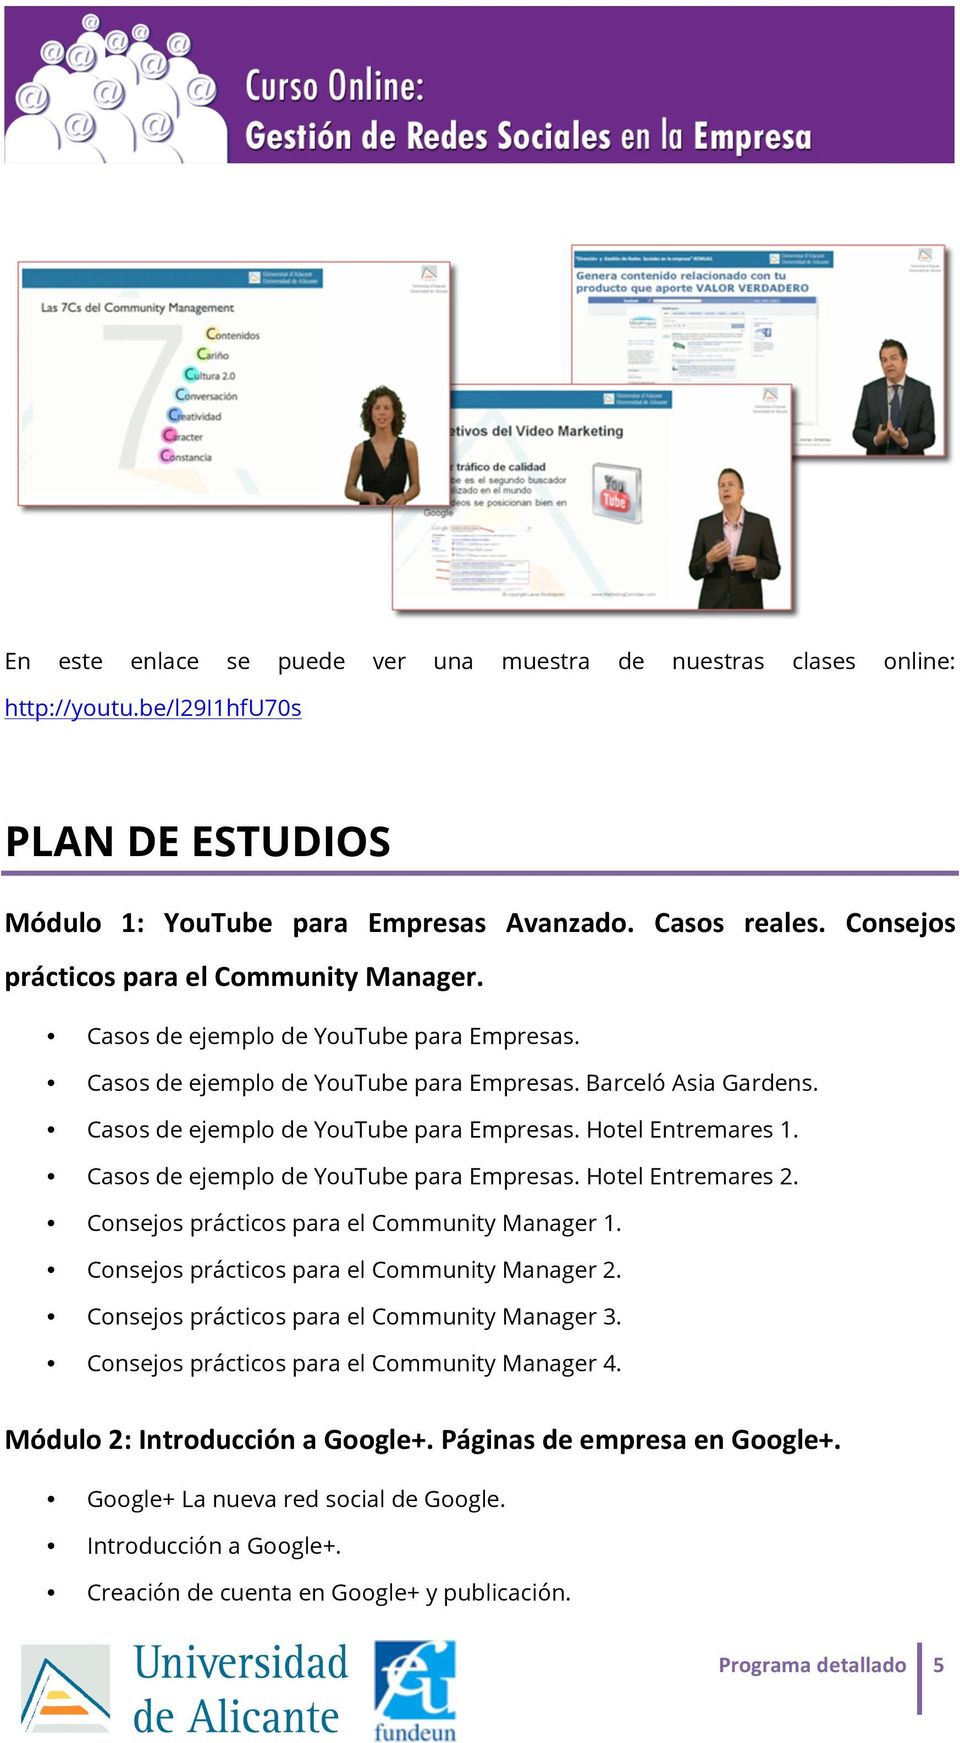 Casos de ejemplo de YouTube para Empresas. Hotel Entremares 2. Consejos prácticos para el Community Manager 1. Consejos prácticos para el Community Manager 2.